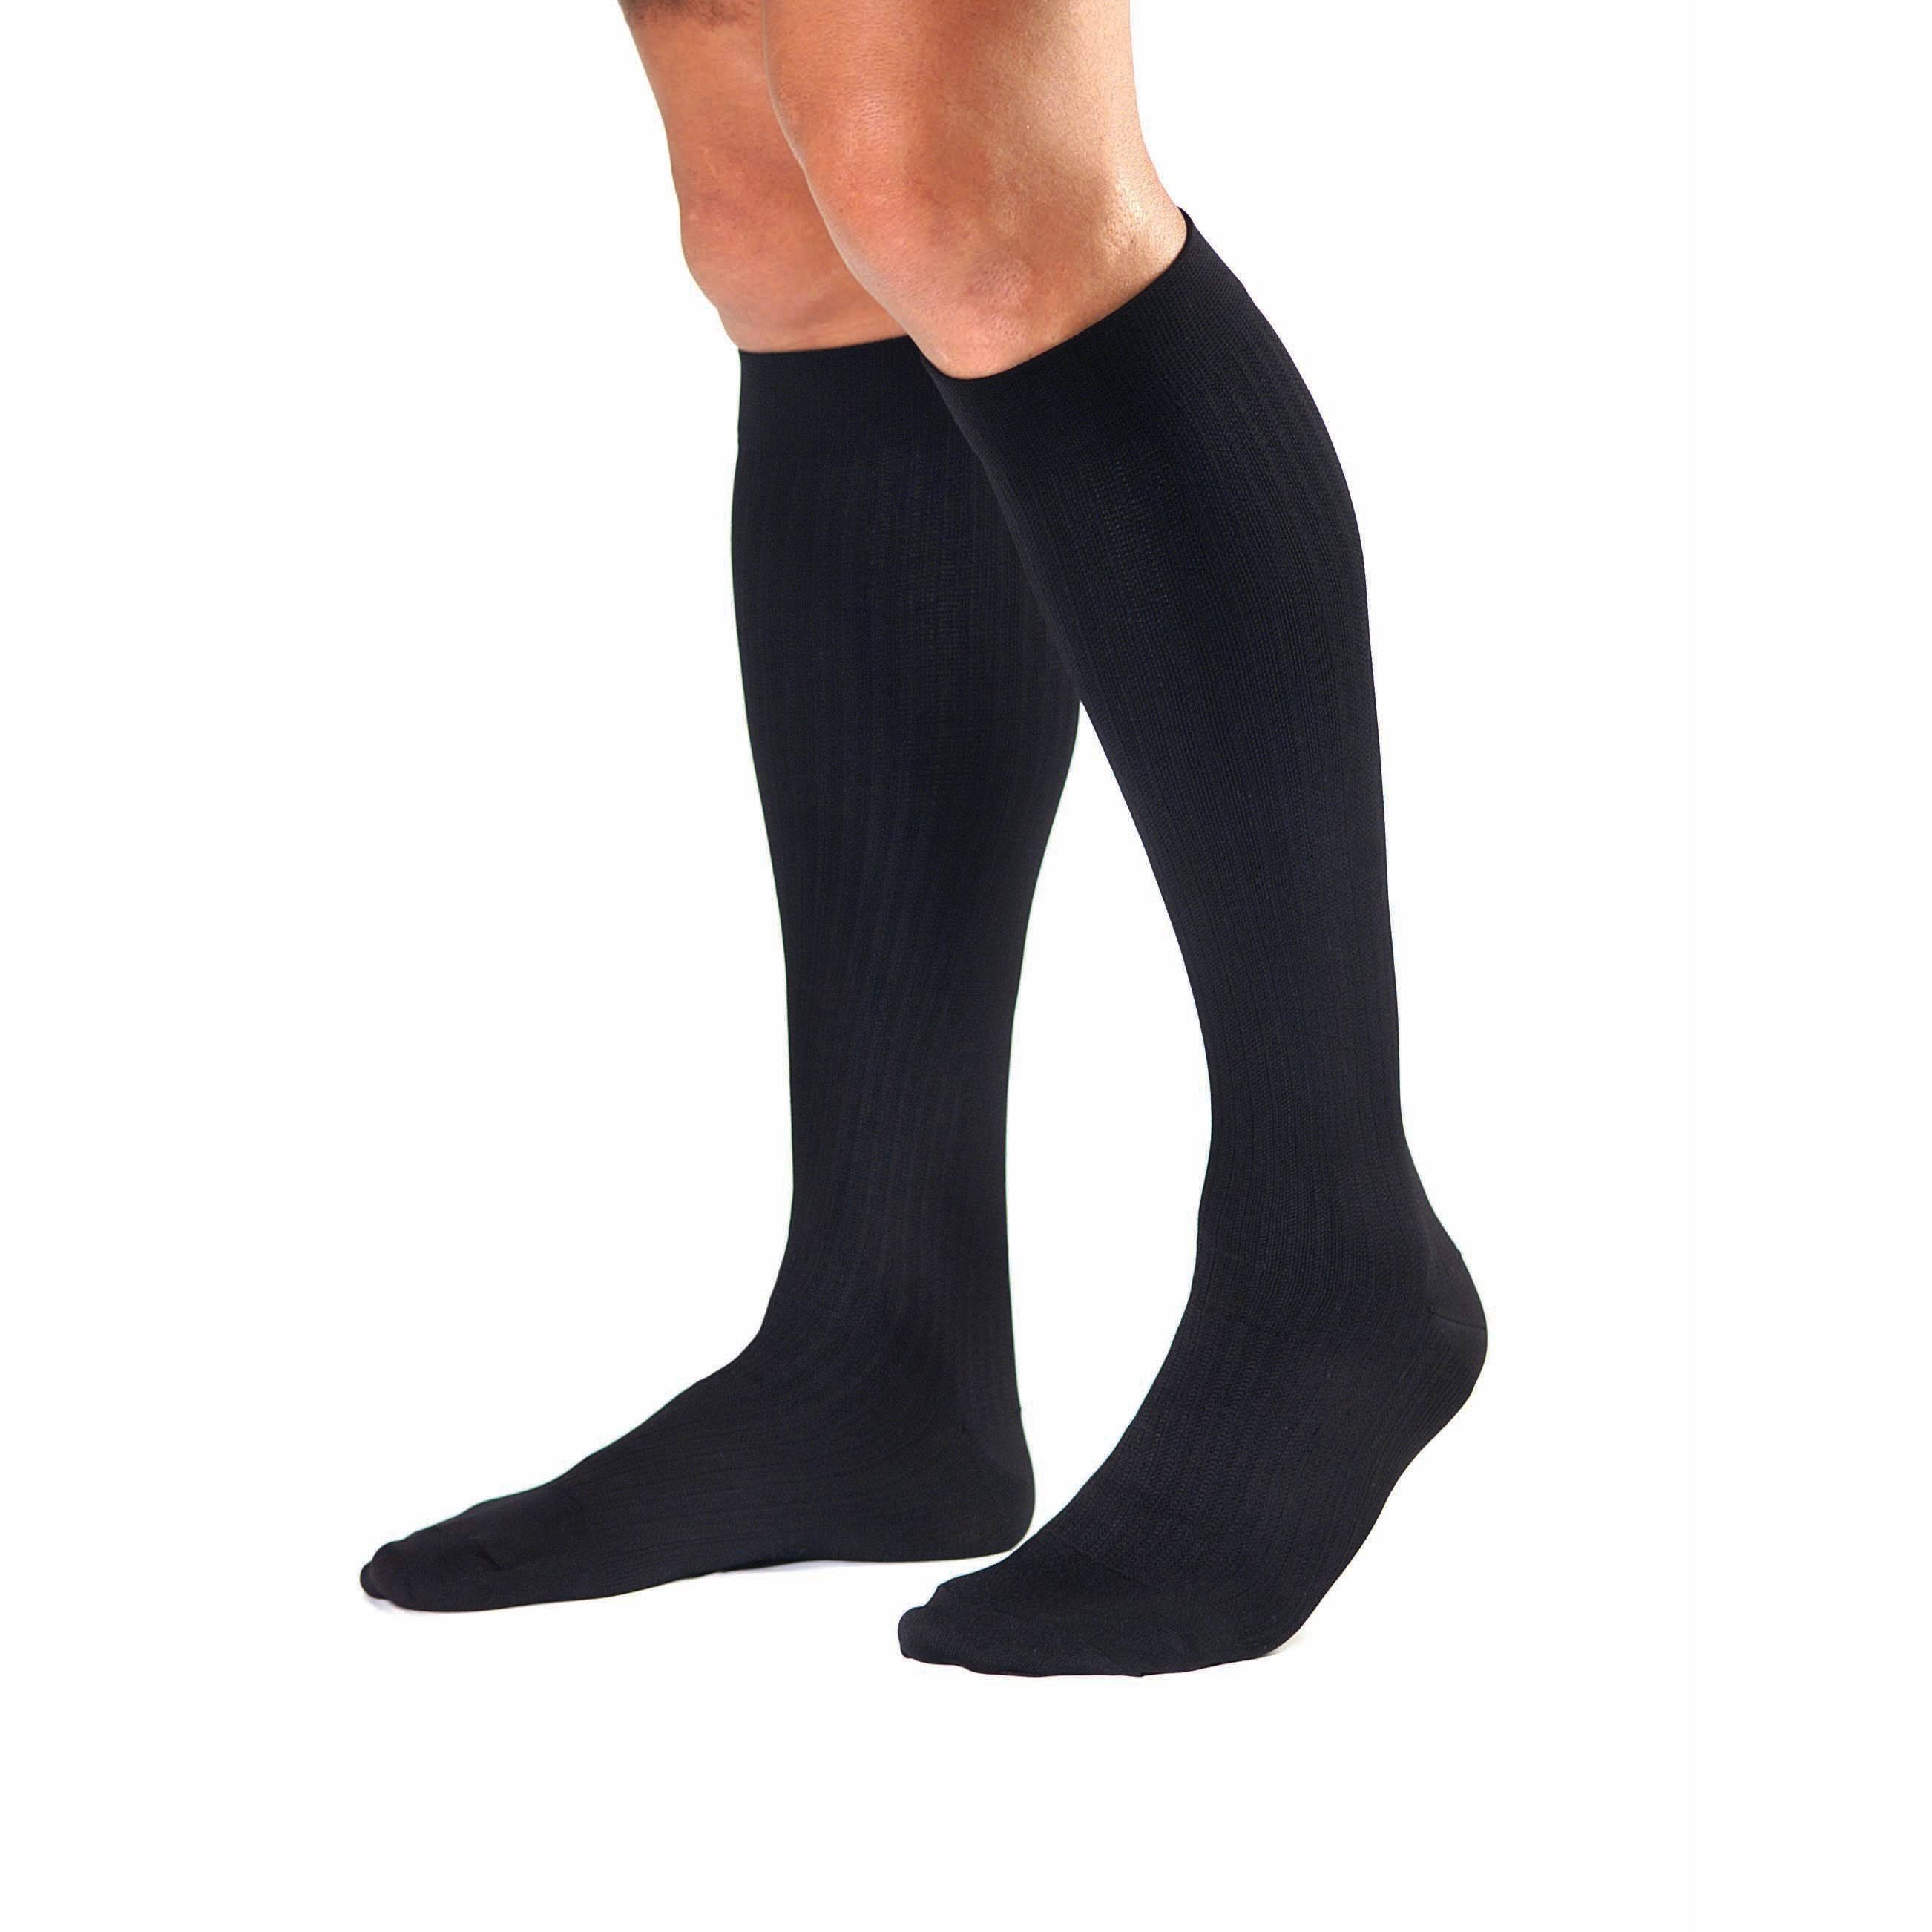 Activa 20-30 mmHg Men's Firm Support Dress Socks - Black, Large